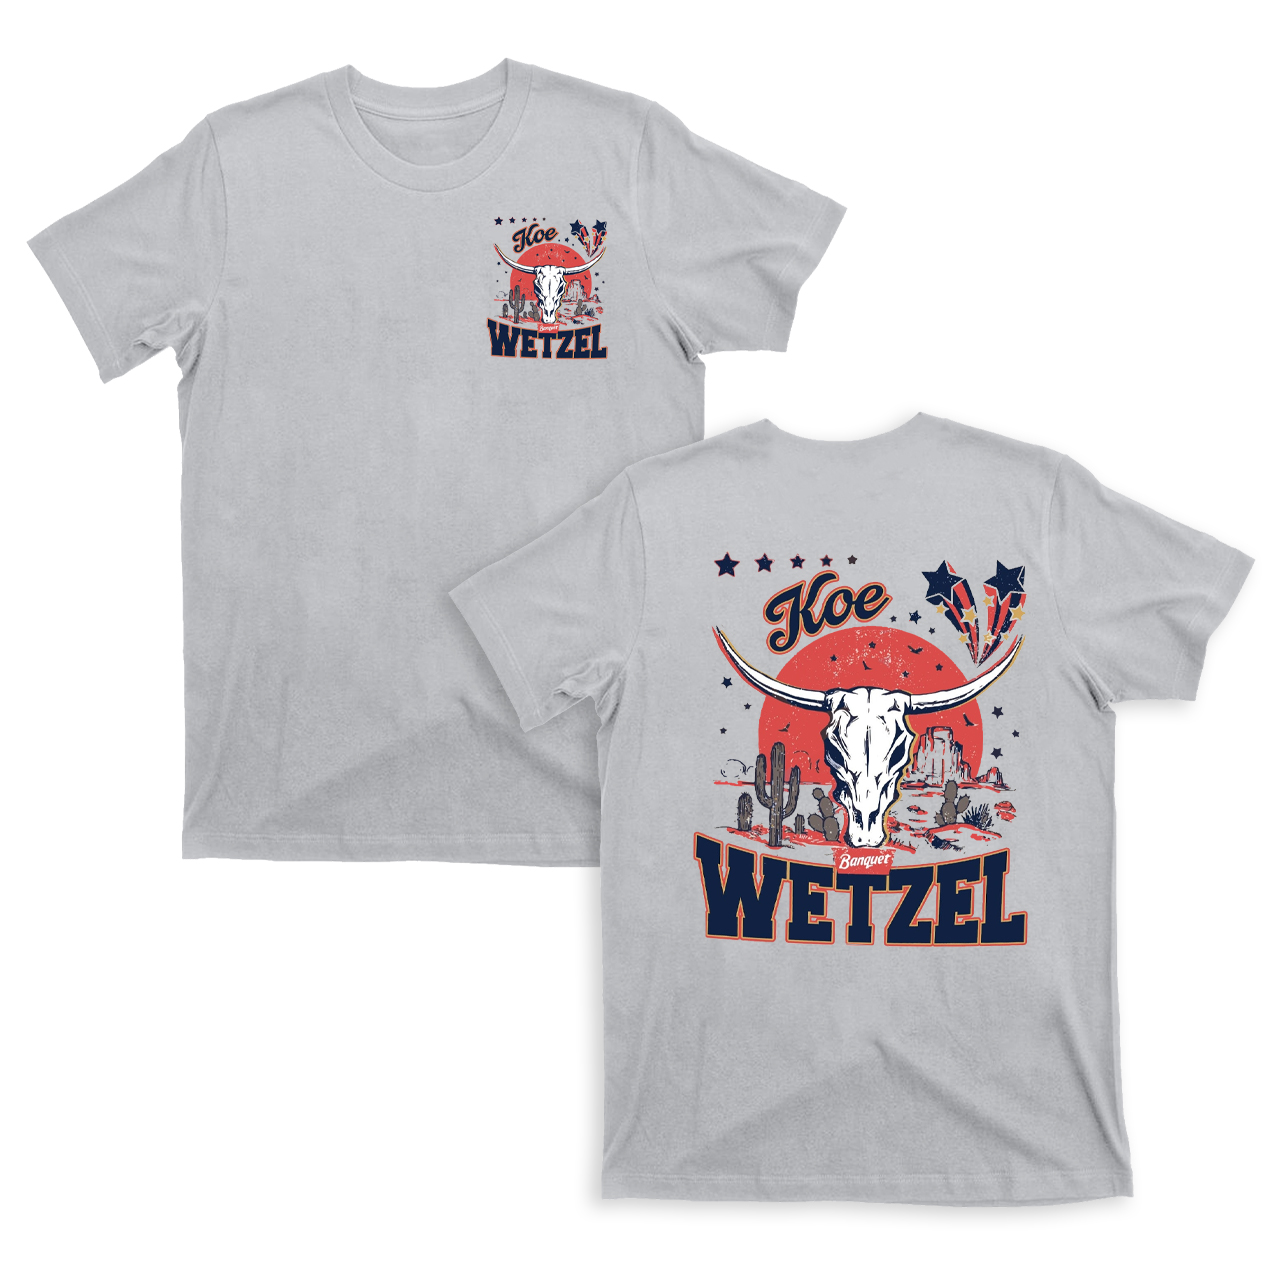 Koe Wetzel Bullhead Cowboy T-Shirts